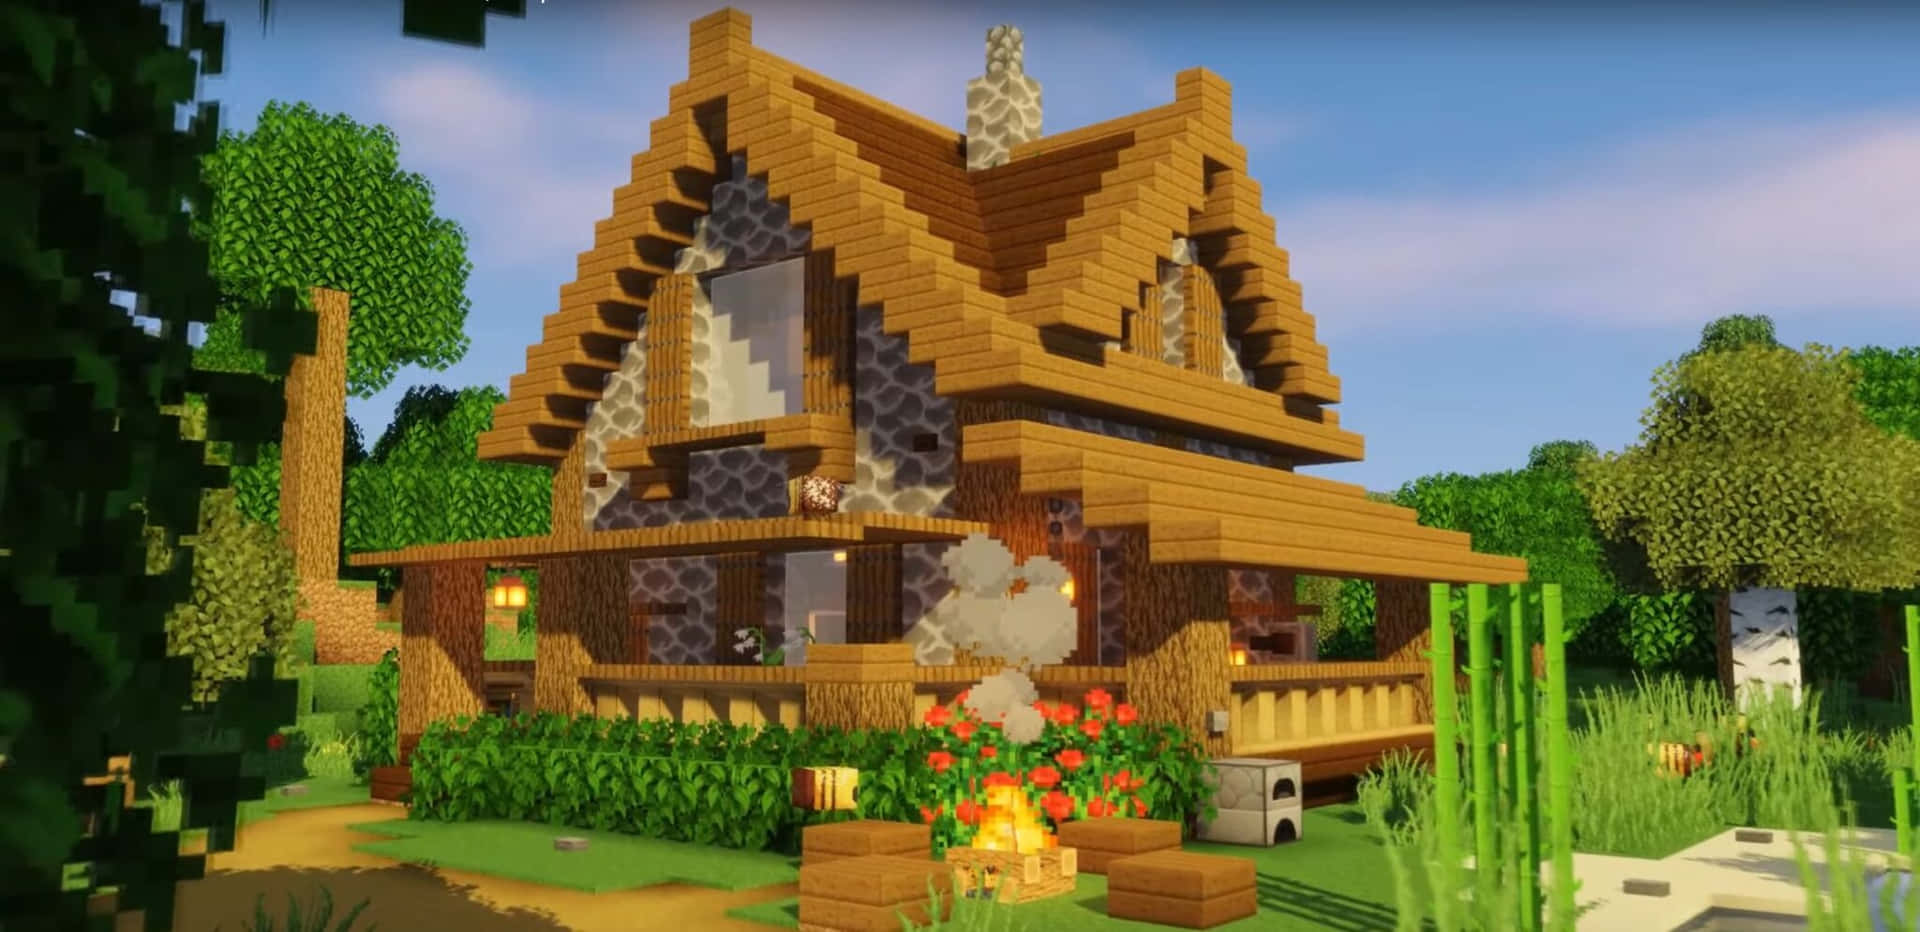 Unavista Espectacular De Un Pueblo De Casas Tradicionales De Minecraft